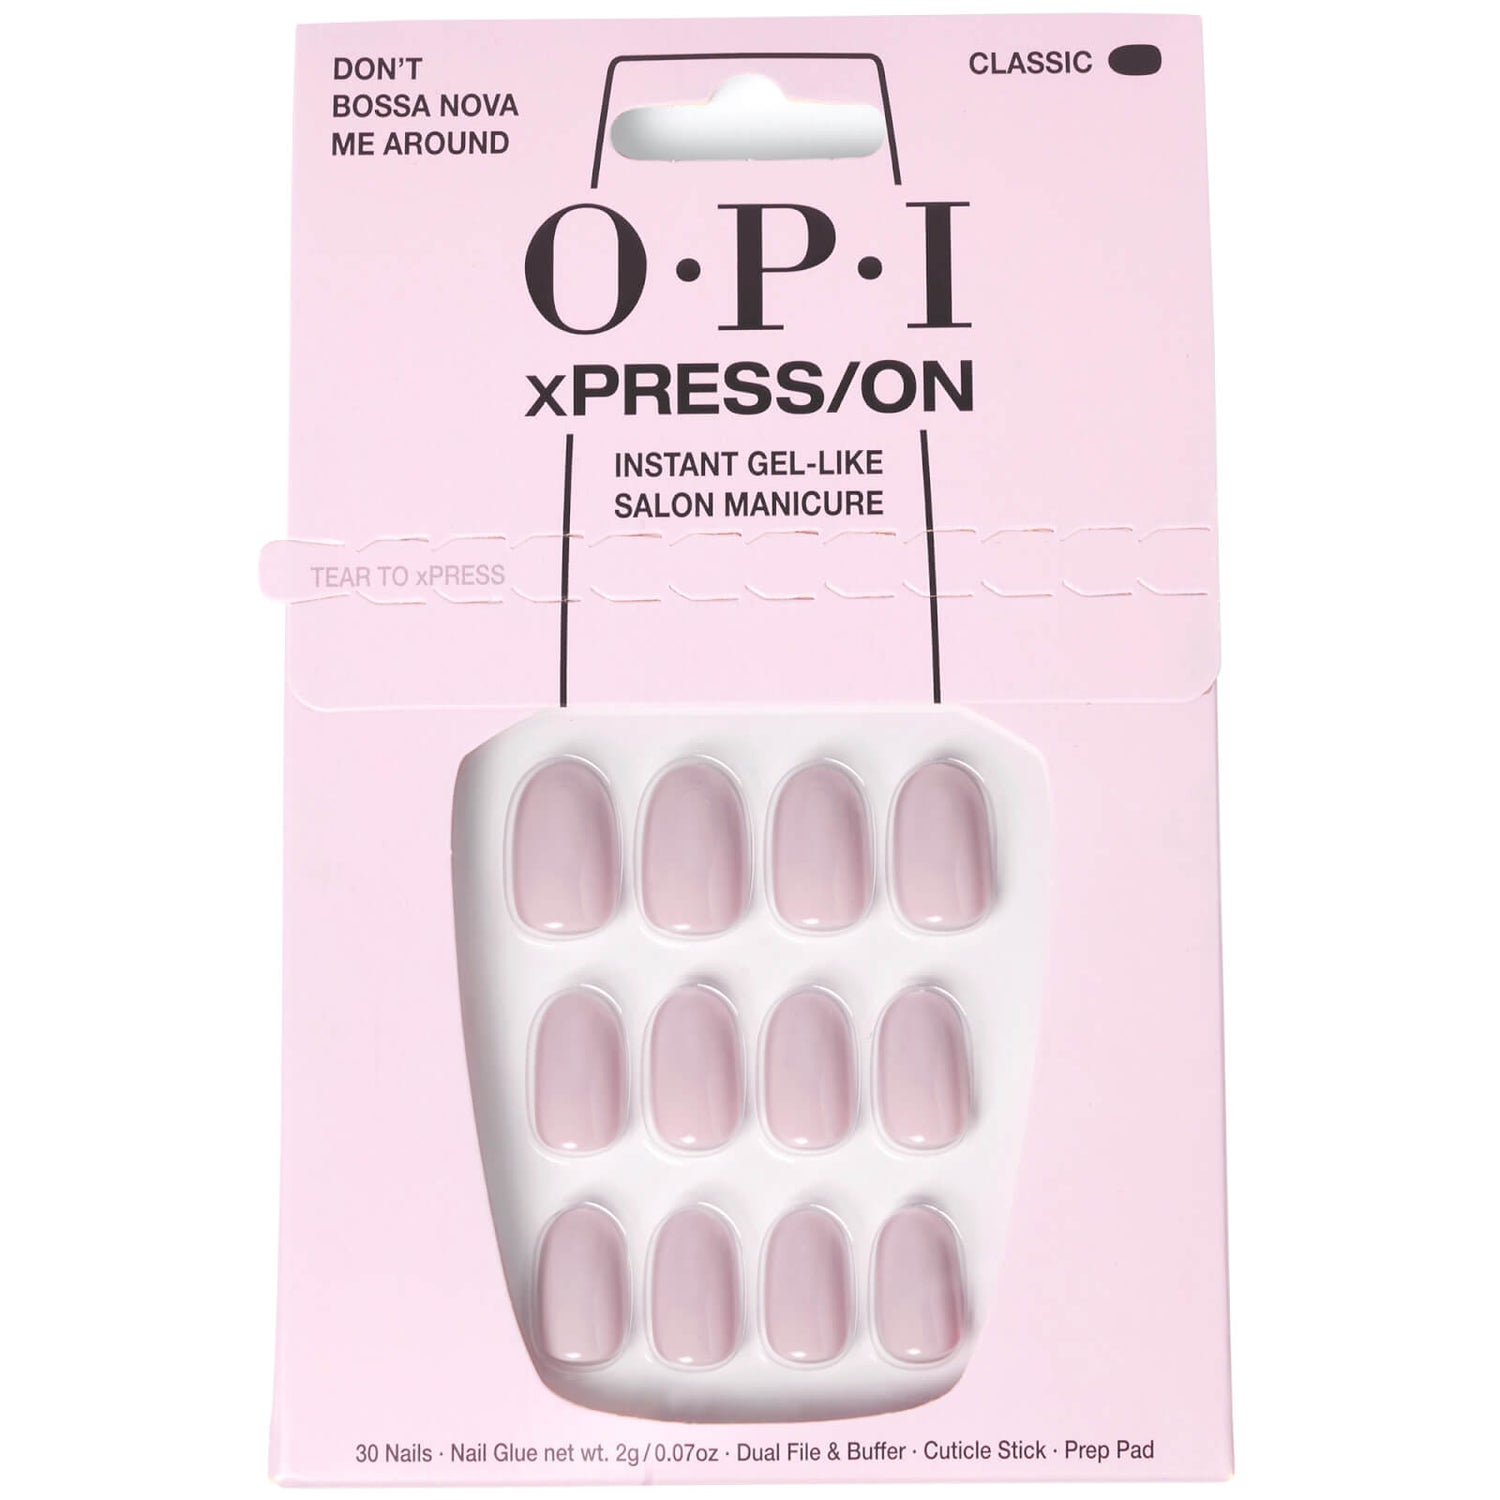 OPI xPRESS/ON - Don’t Bossa Nova Me Around Press On Nails Gel-Like Salon Manicure